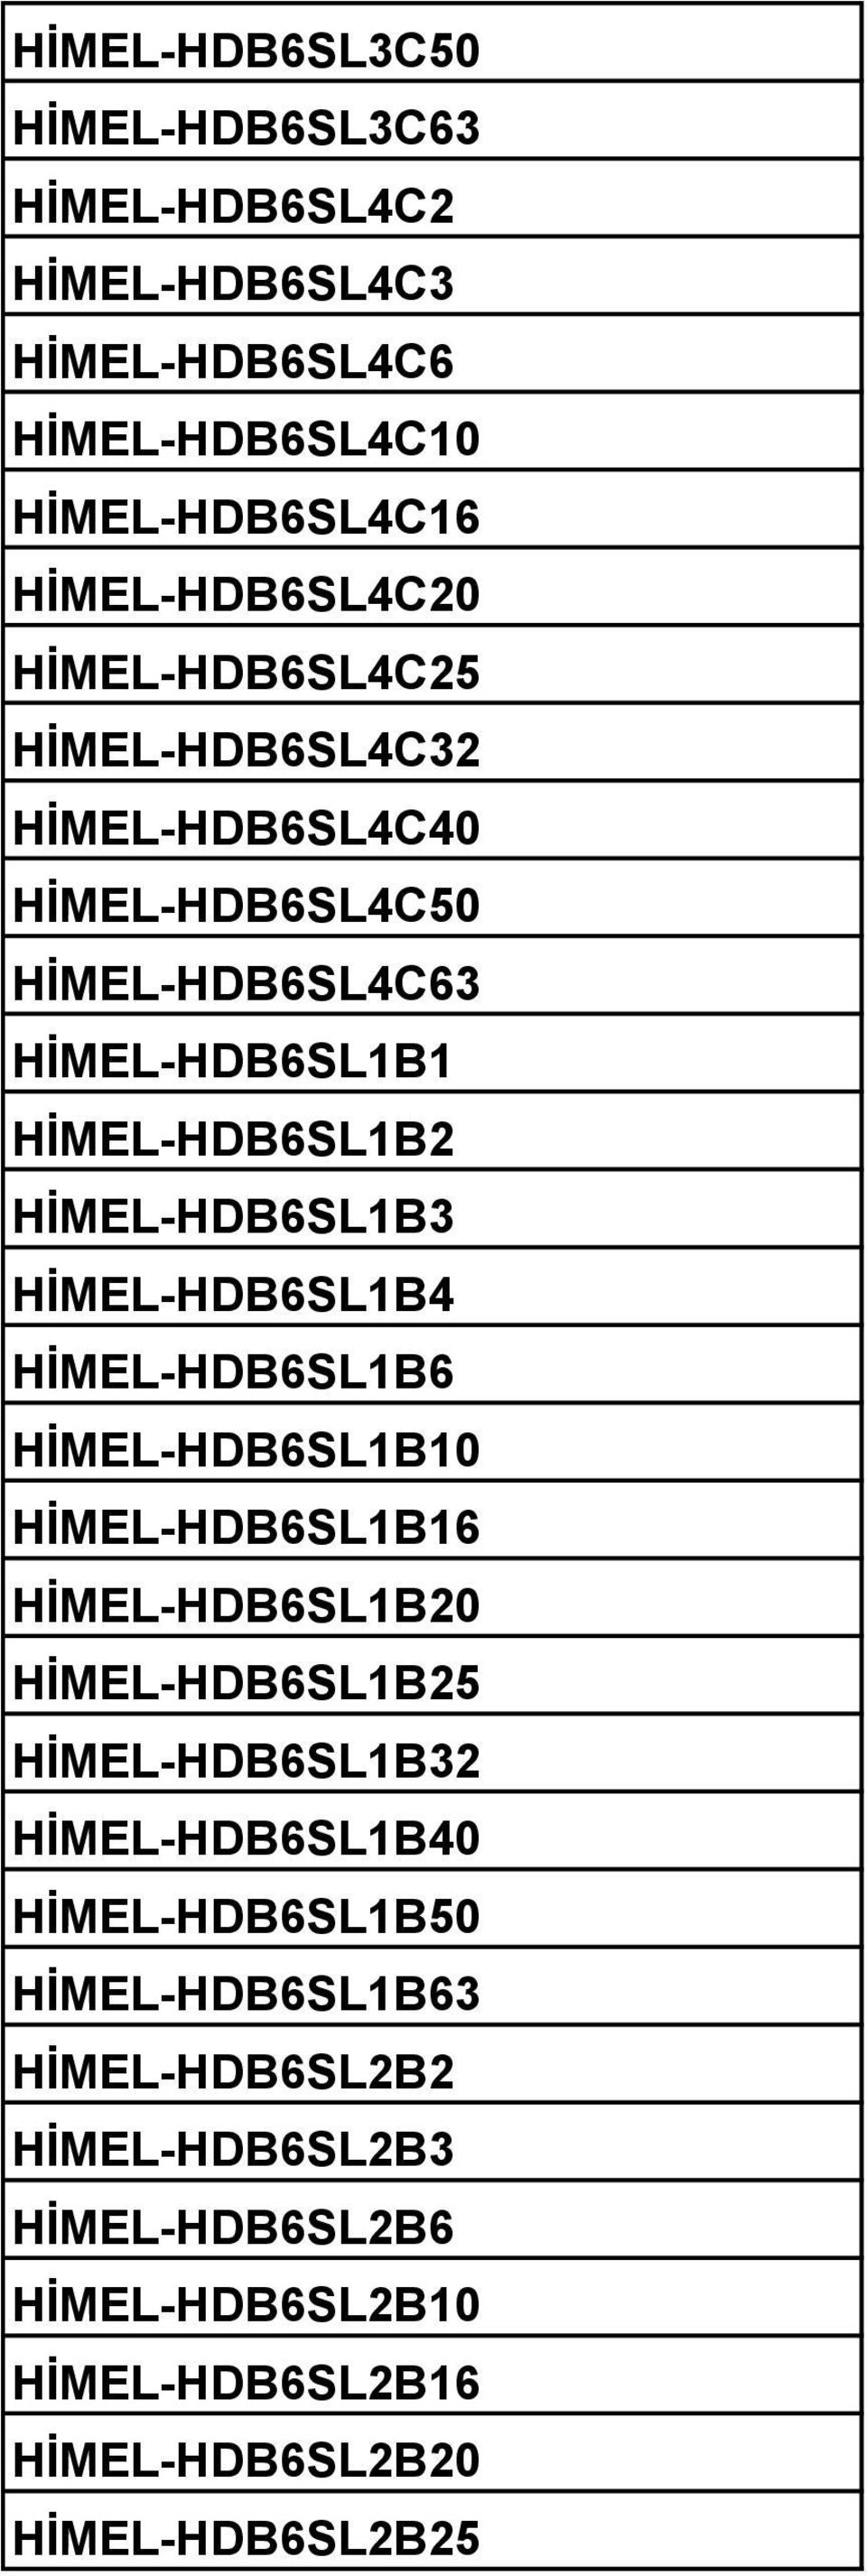 HİMEL-HDB6SL1B4 HİMEL-HDB6SL1B6 HİMEL-HDB6SL1B10 HİMEL-HDB6SL1B16 HİMEL-HDB6SL1B20 HİMEL-HDB6SL1B25 HİMEL-HDB6SL1B32 HİMEL-HDB6SL1B40